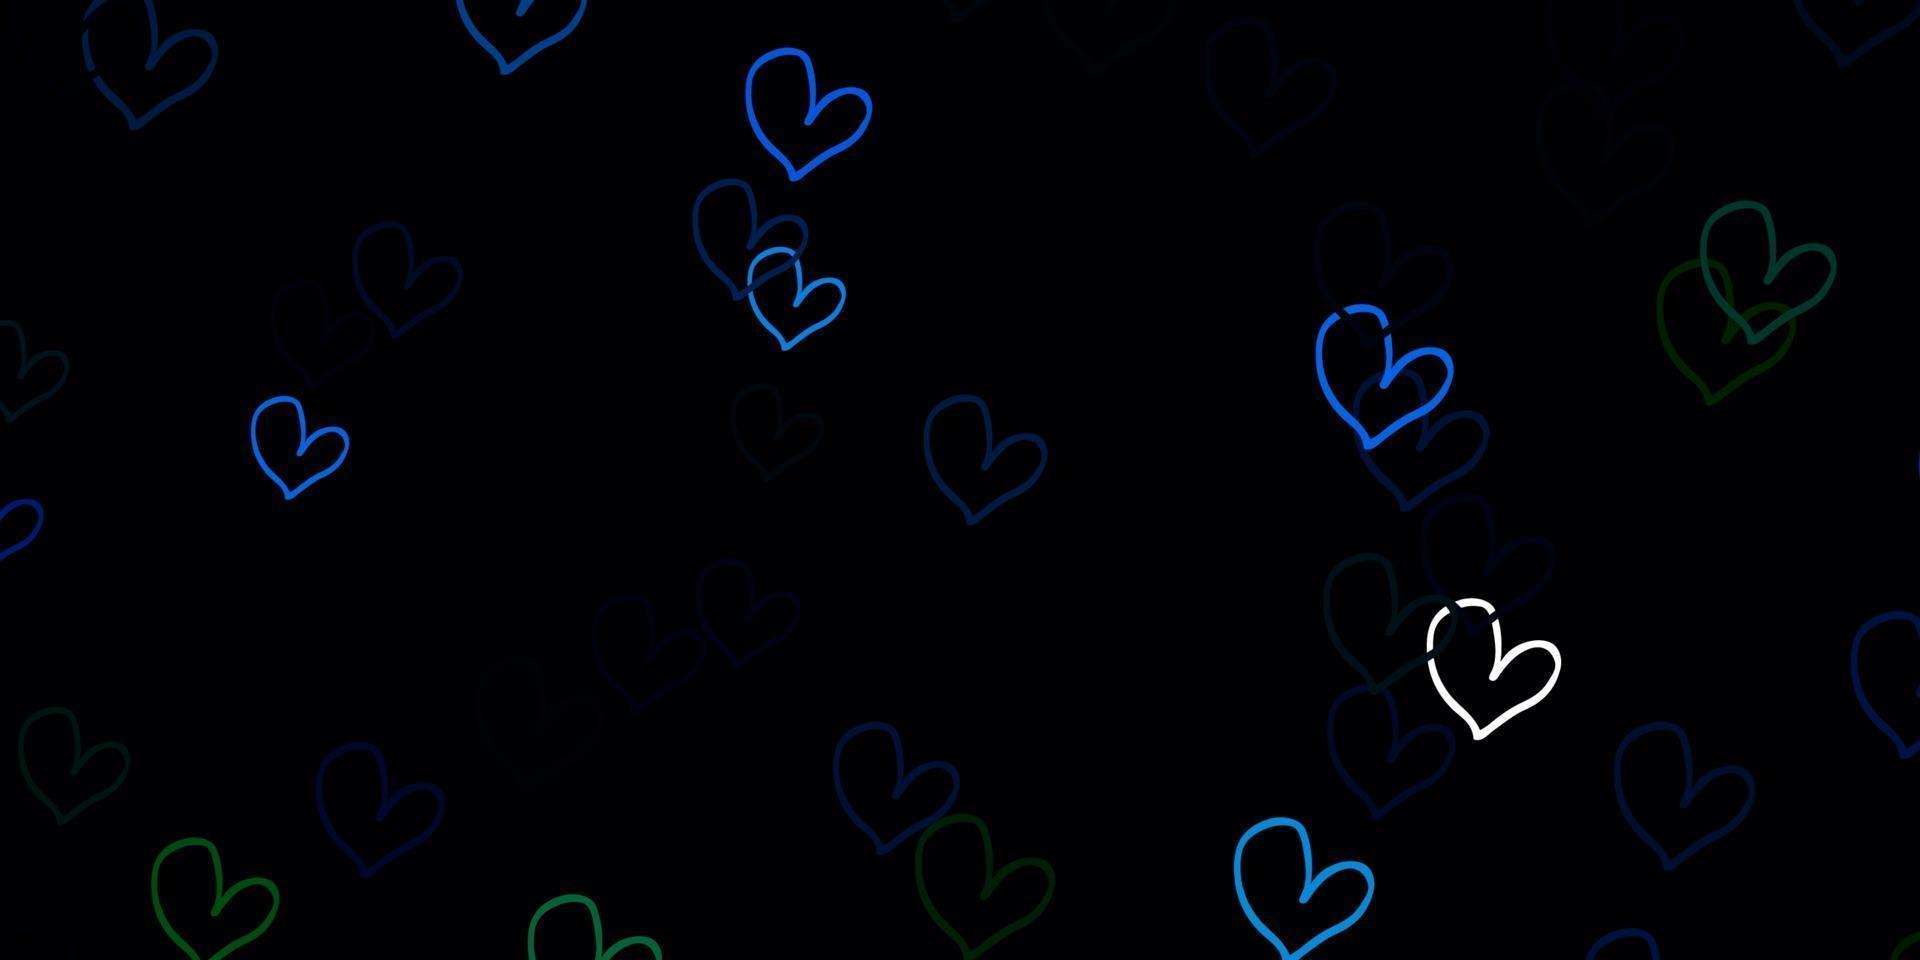 padrão de vetor azul claro, verde com corações coloridos.